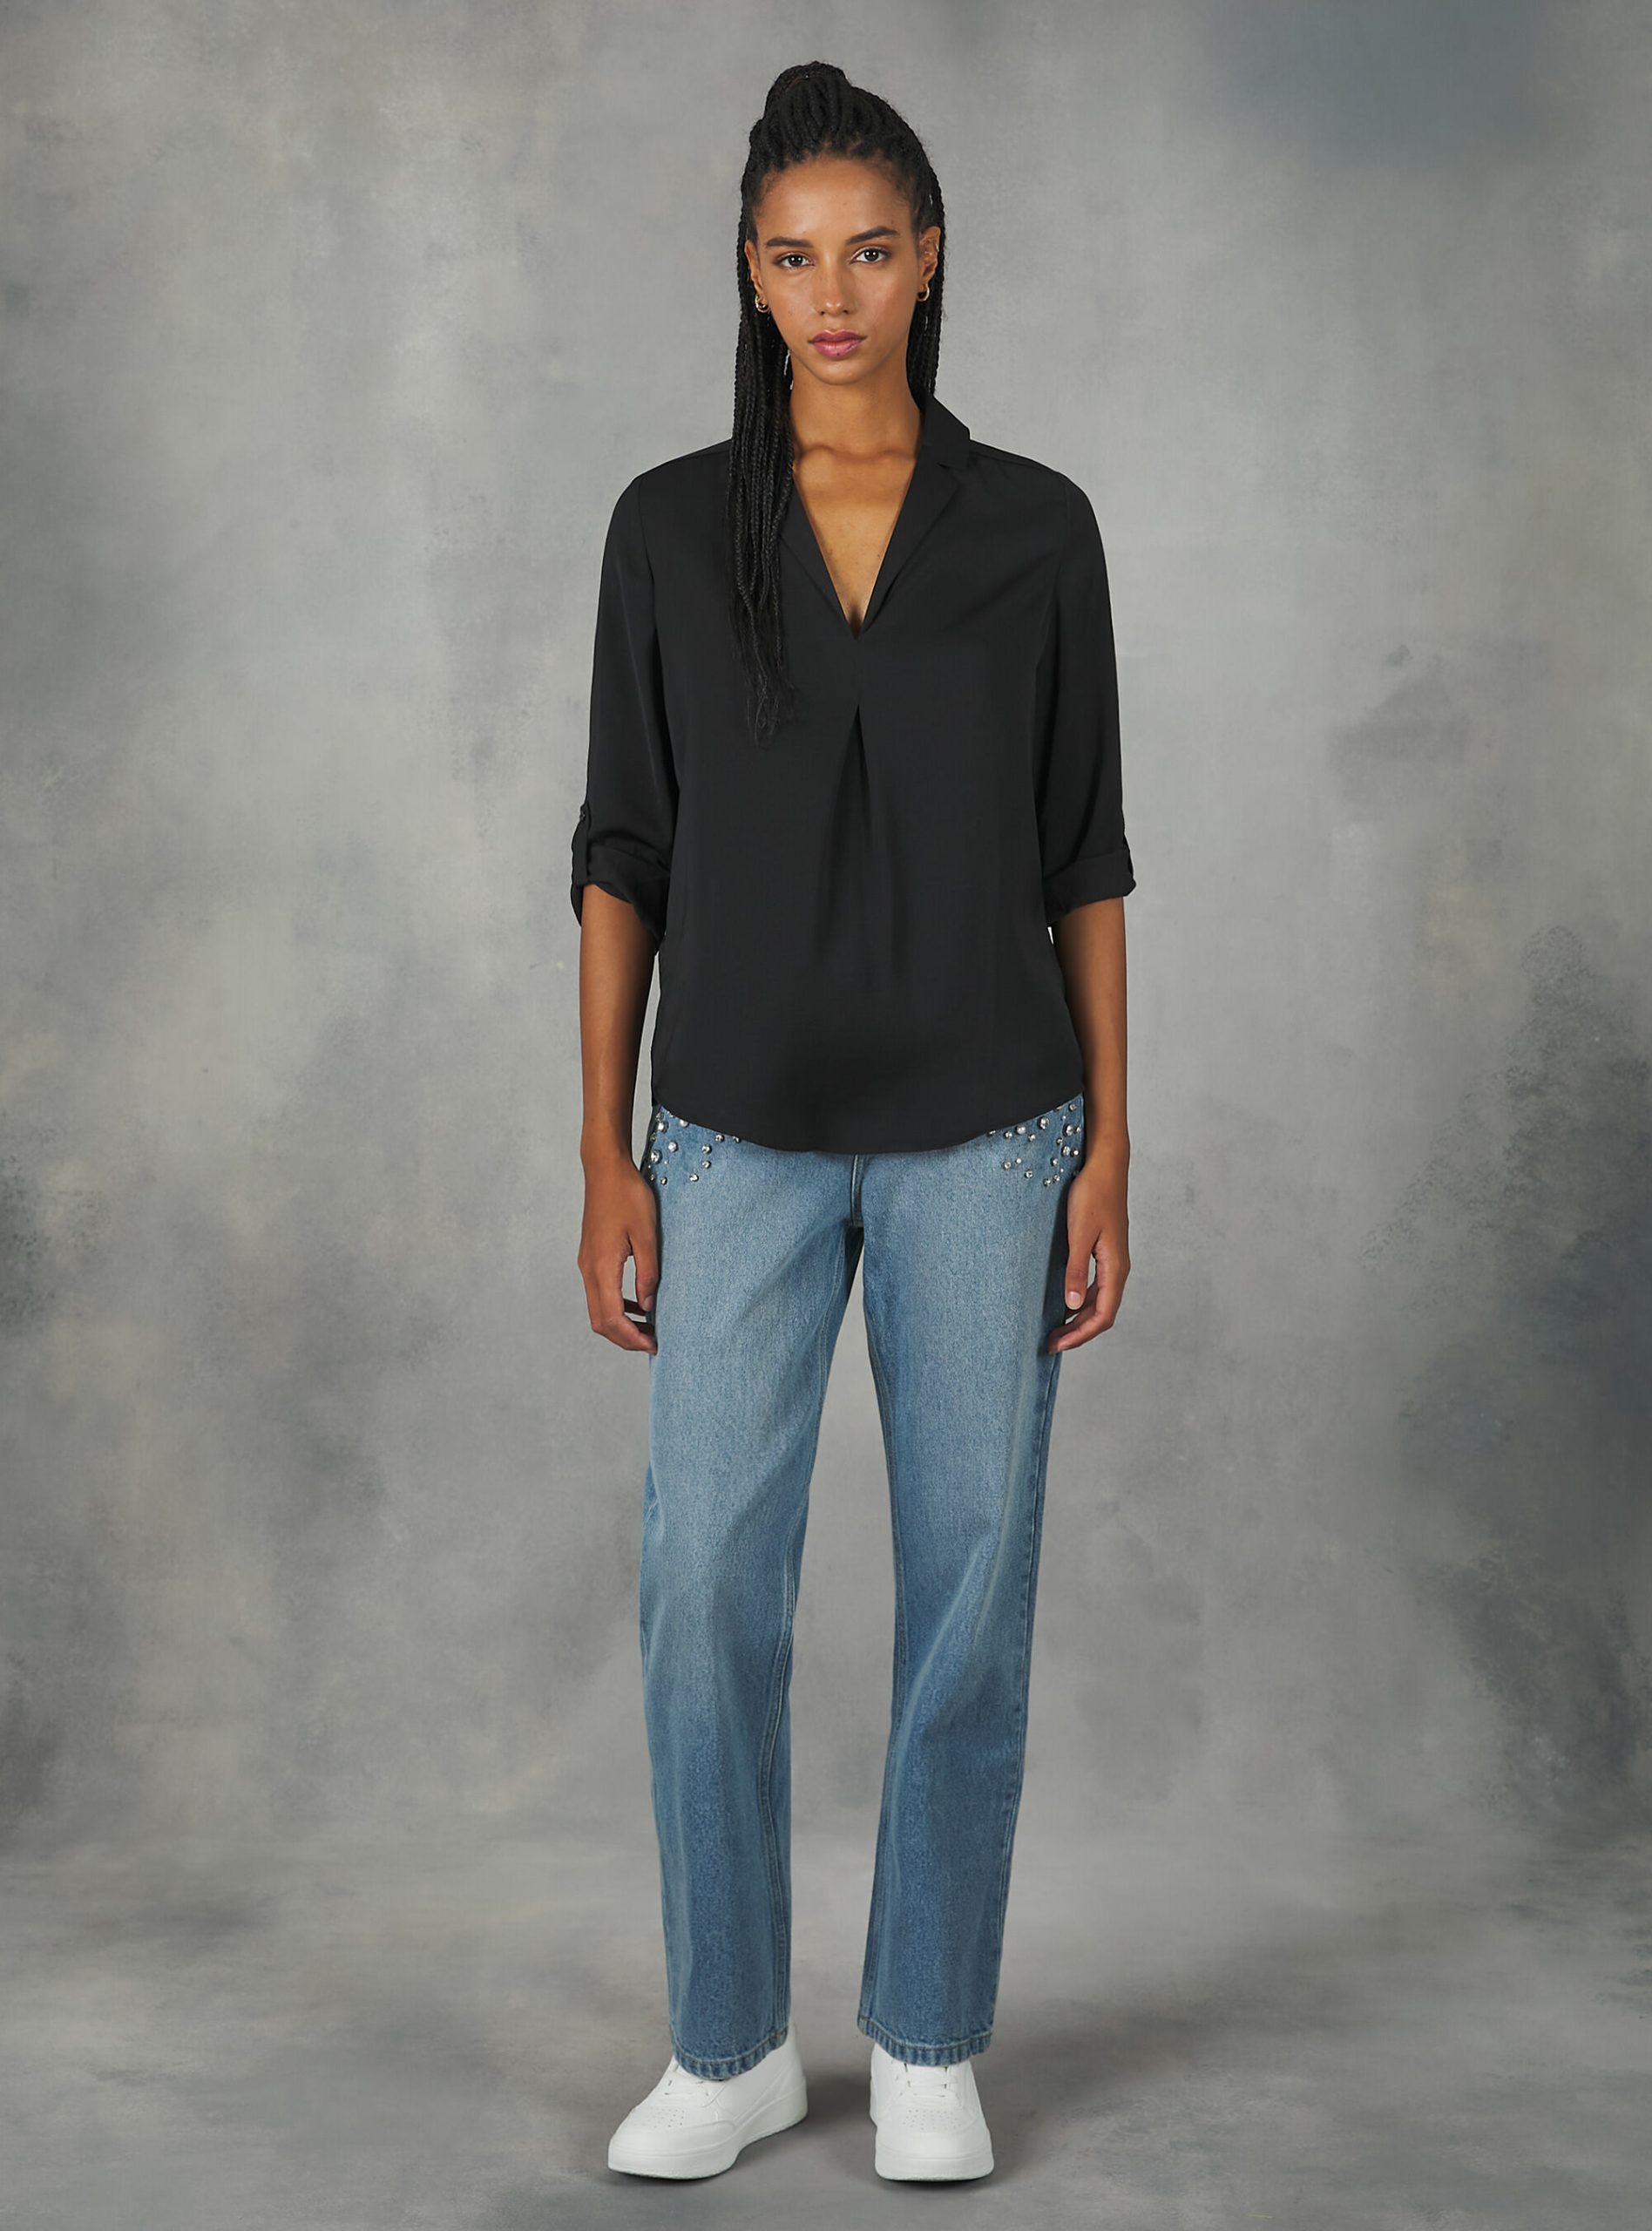 Frauen Hemden Bk1 Black Gut Alcott Plain-Coloured Blouse With Lapel Neckline – 2